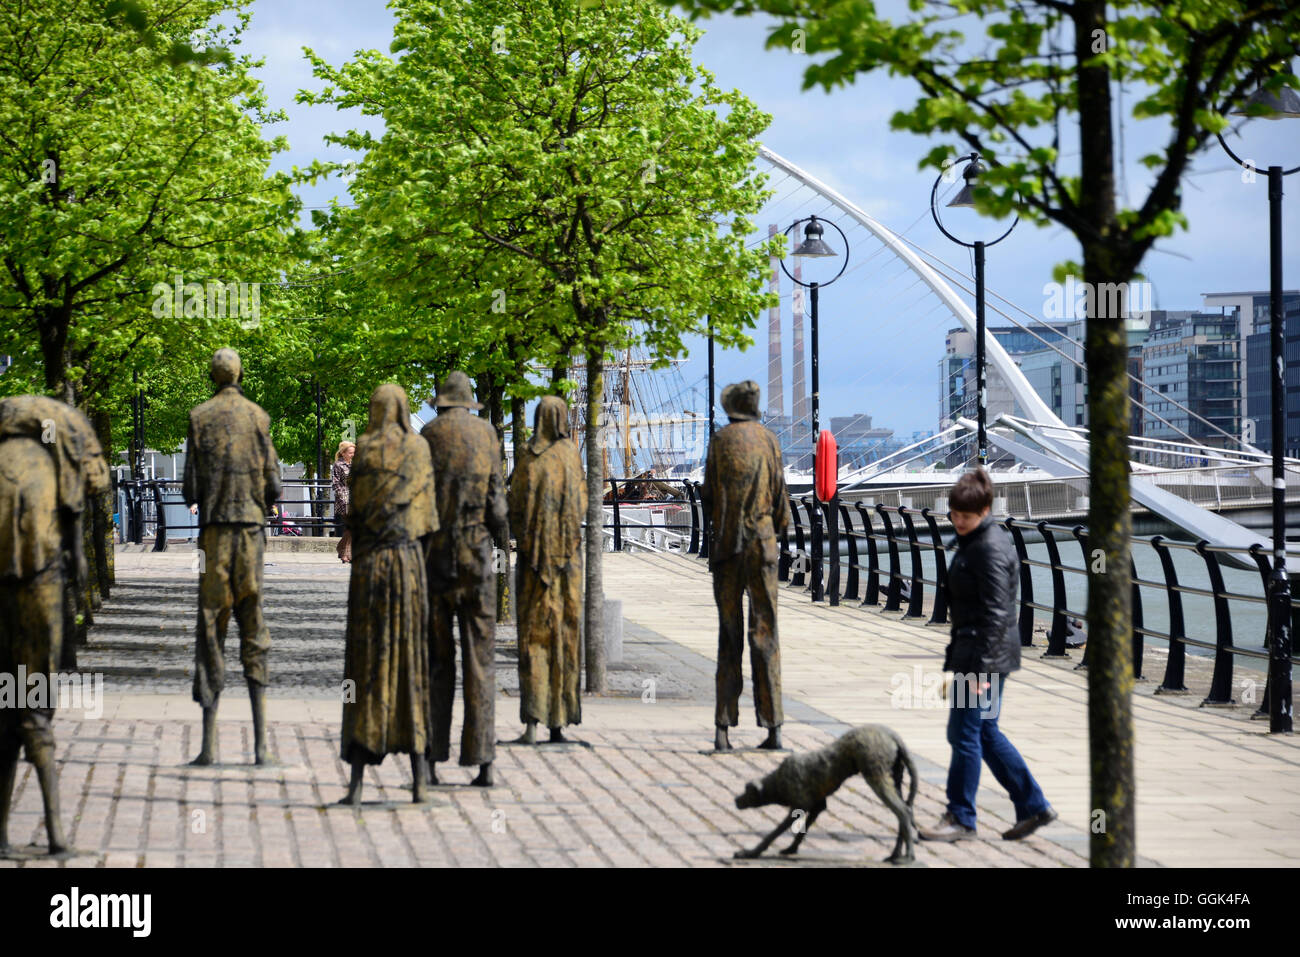 Las estatuas de hambruna en el río Liffey, Docklands, Dublín, Irlanda Foto de stock